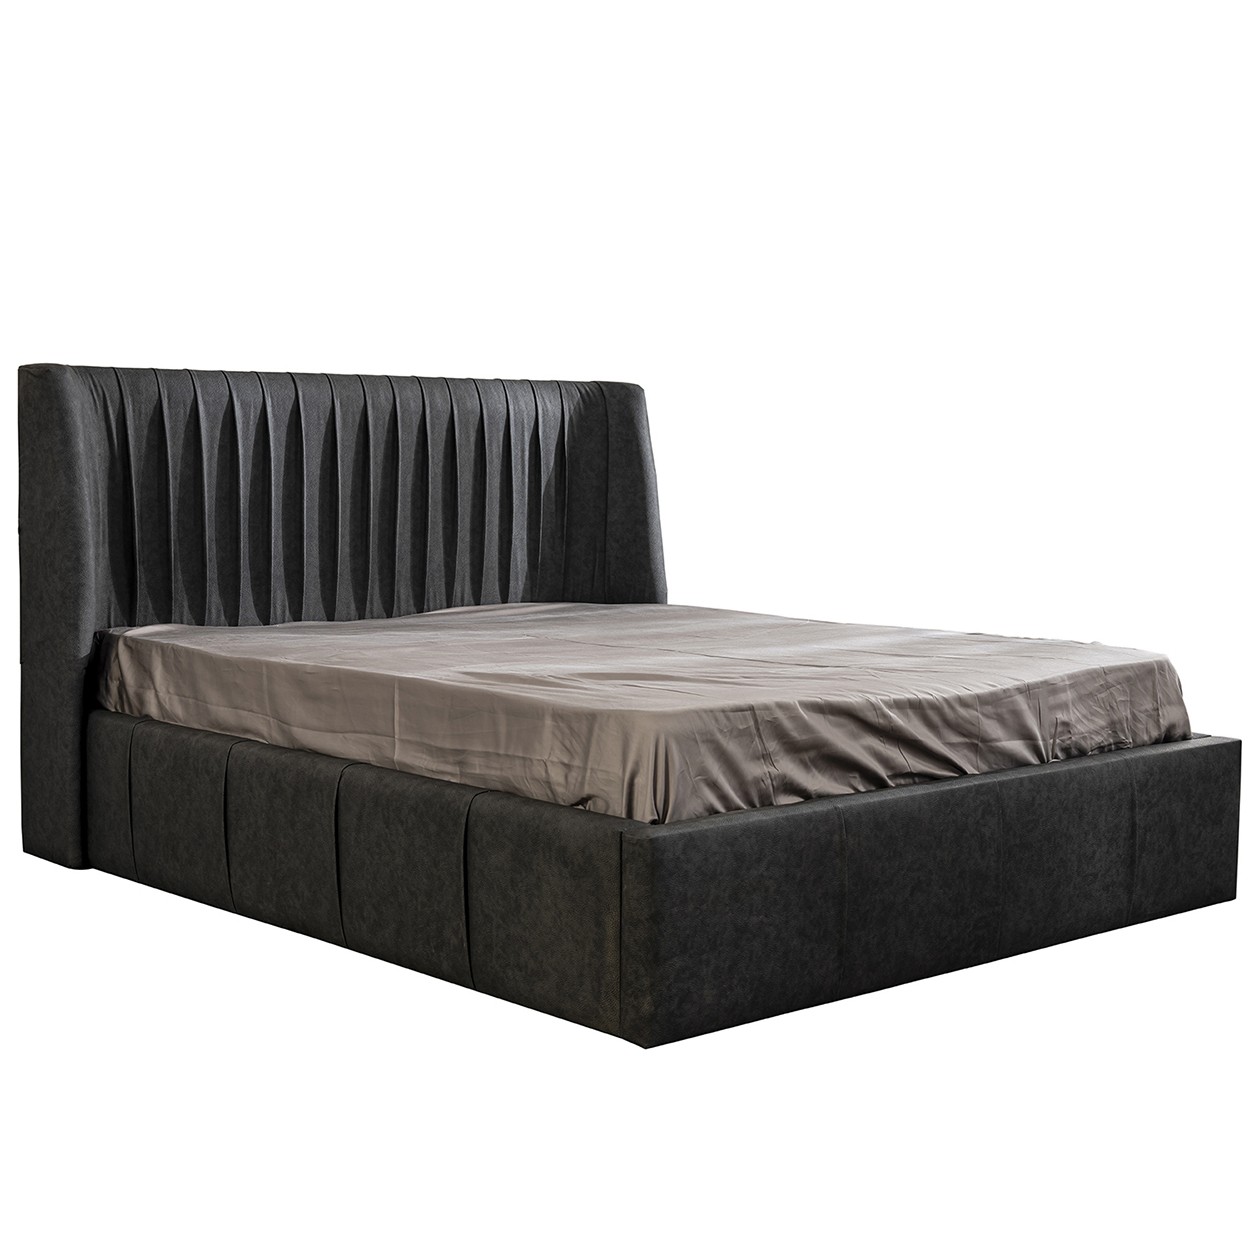 Prada Bed Without Storage 180x200 cm